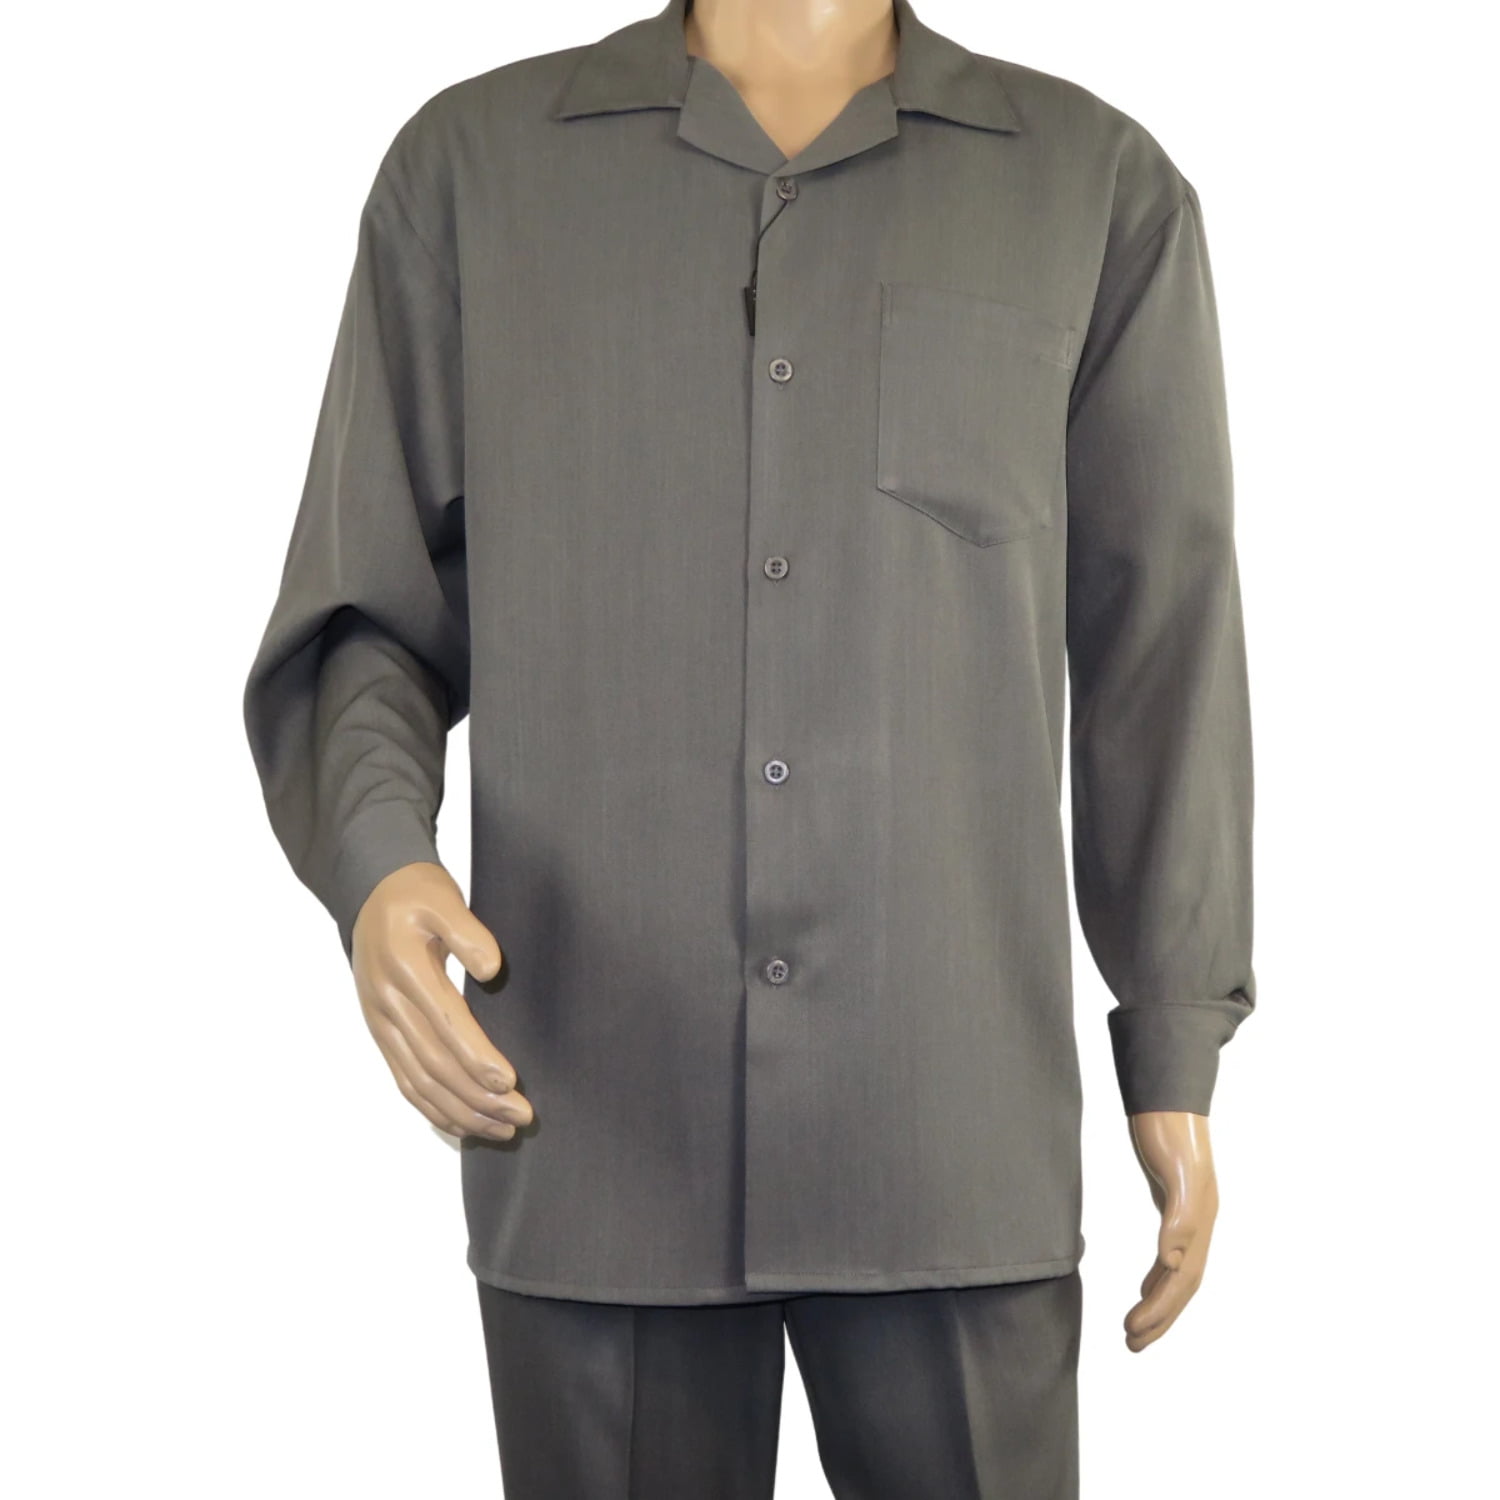 Men MONTIQUE 2pc Set Walking Leisure suit Long Sleeve Set 1641 Solid Black New 